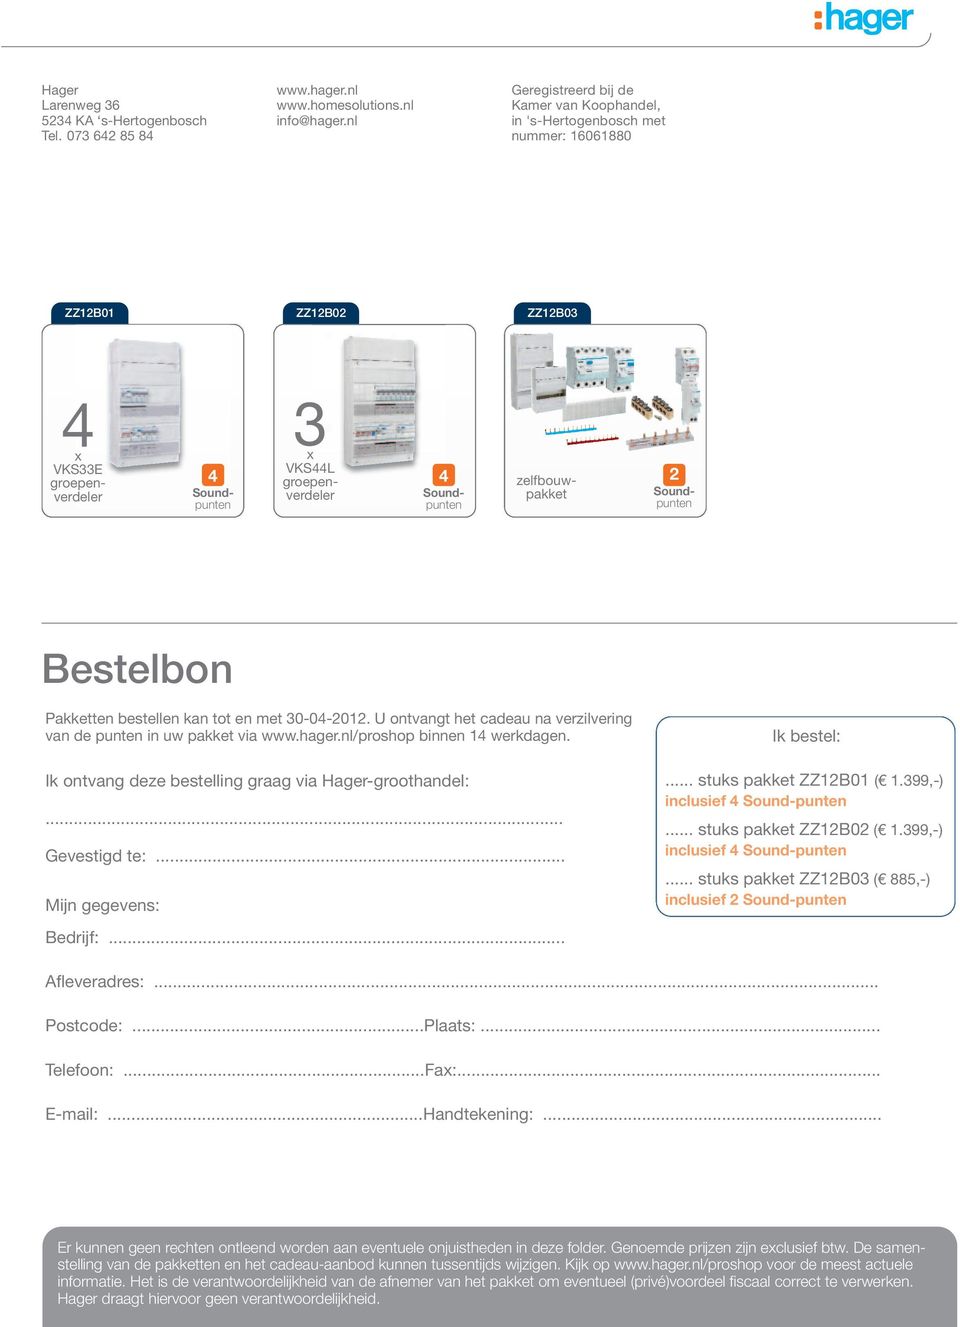 zelfbouwpakket 2 Soundpunten Bestelbon Pakketten bestellen kan tot en met 30-04-2012. U ontvangt het cadeau na verzilvering van de punten in uw pakket via www.hager.nl/proshop binnen 14 werkdagen.